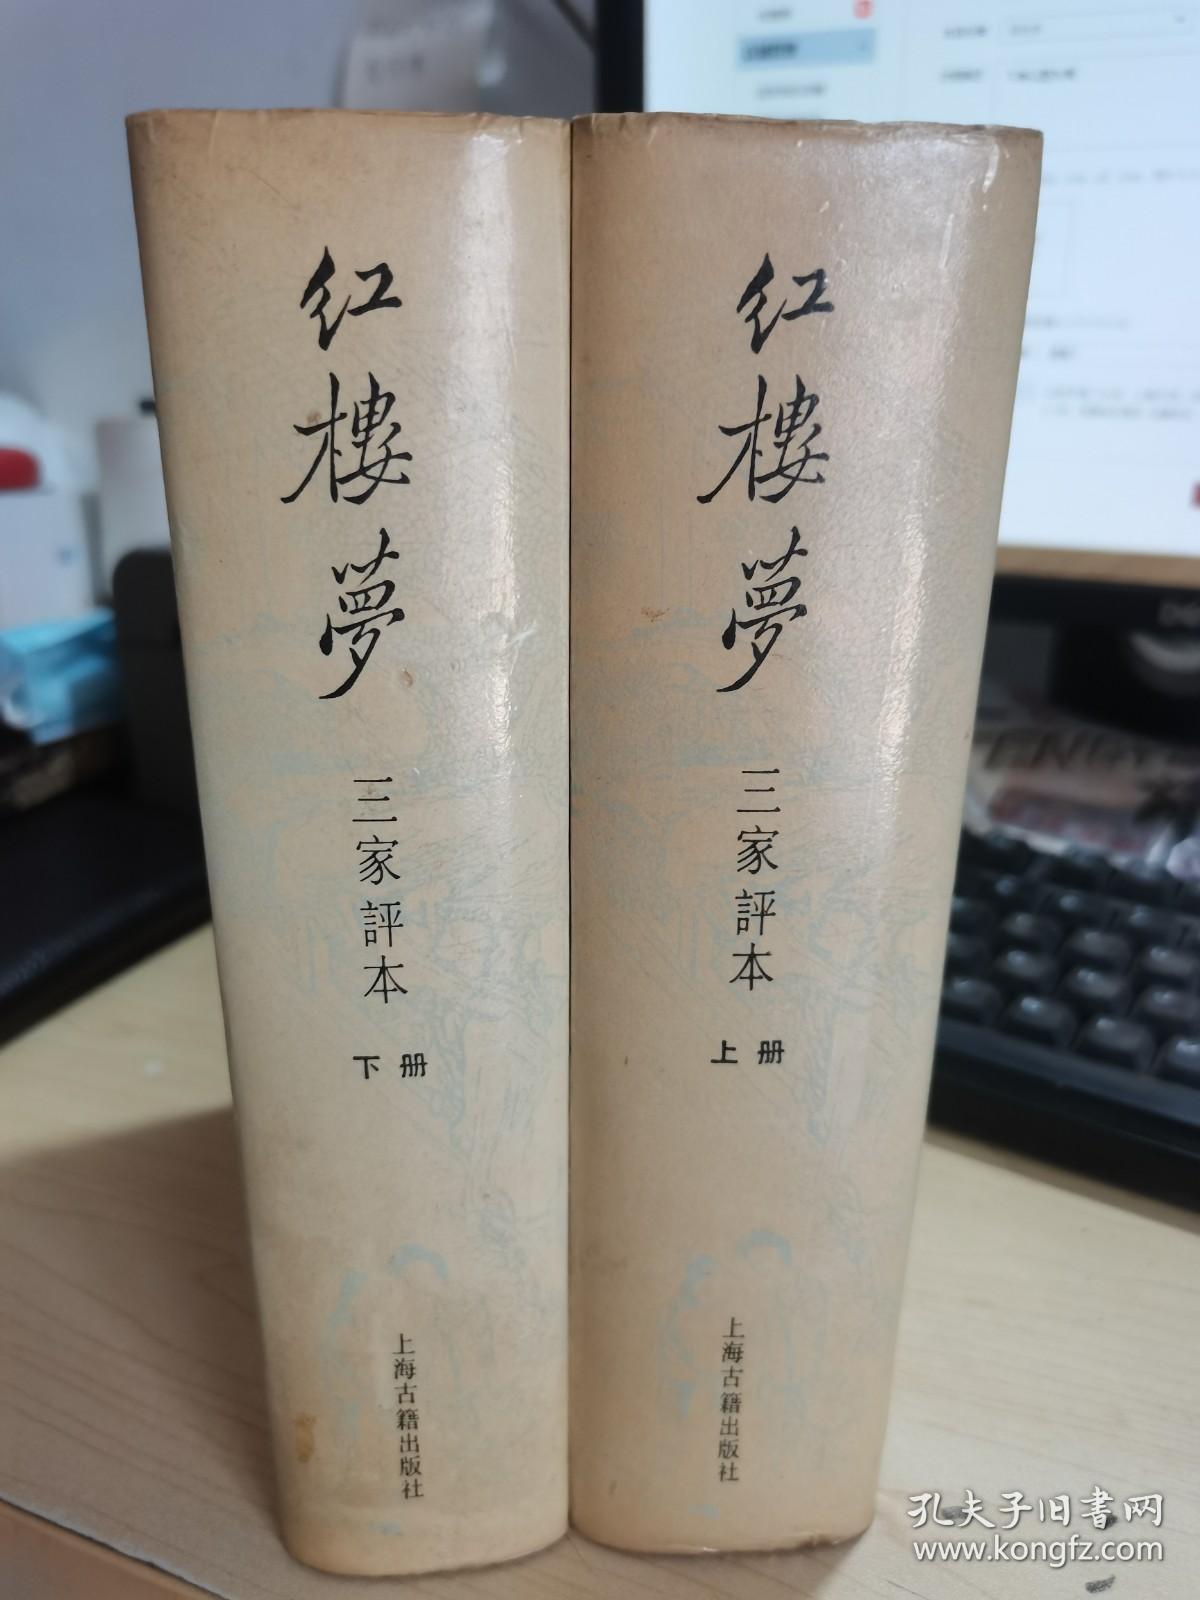 红楼梦 三家评本（上海古籍版，精装护封 上下 二册全 众多精美插图 1988年2月一版一印），